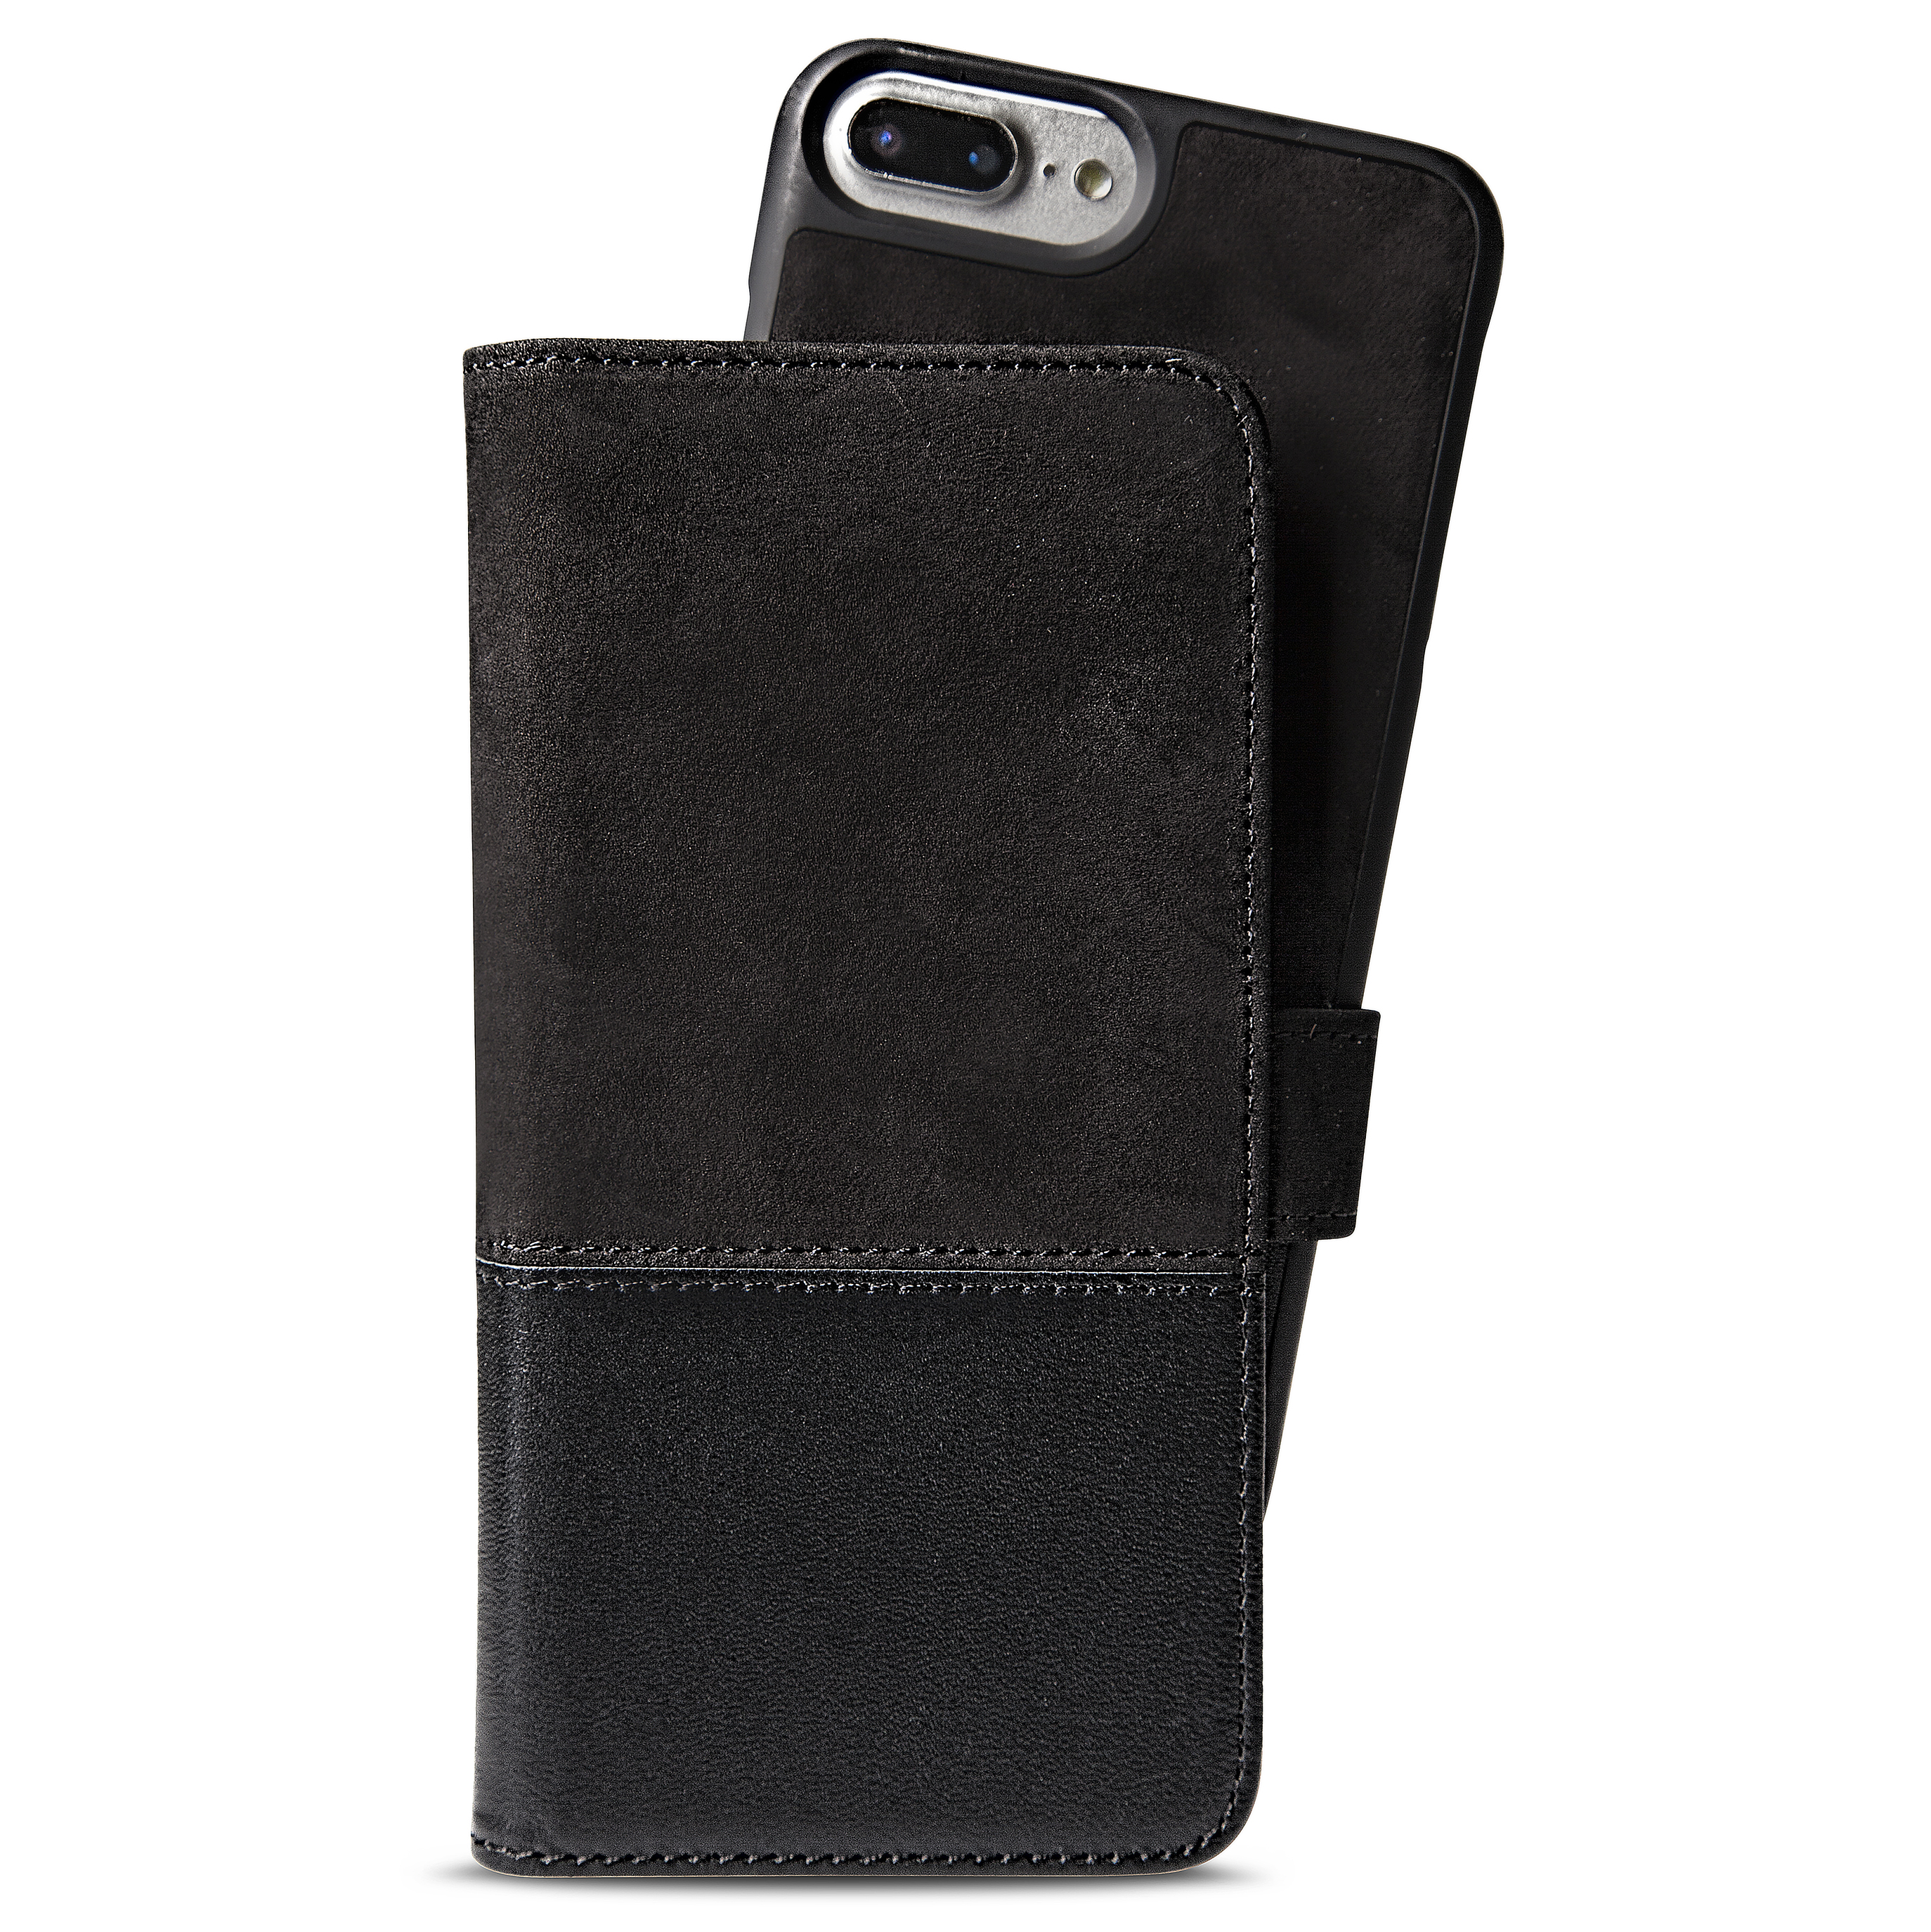 iPhone 8/7/6s/6 Plus, selected wallet magnetisch leder/suede, zwart